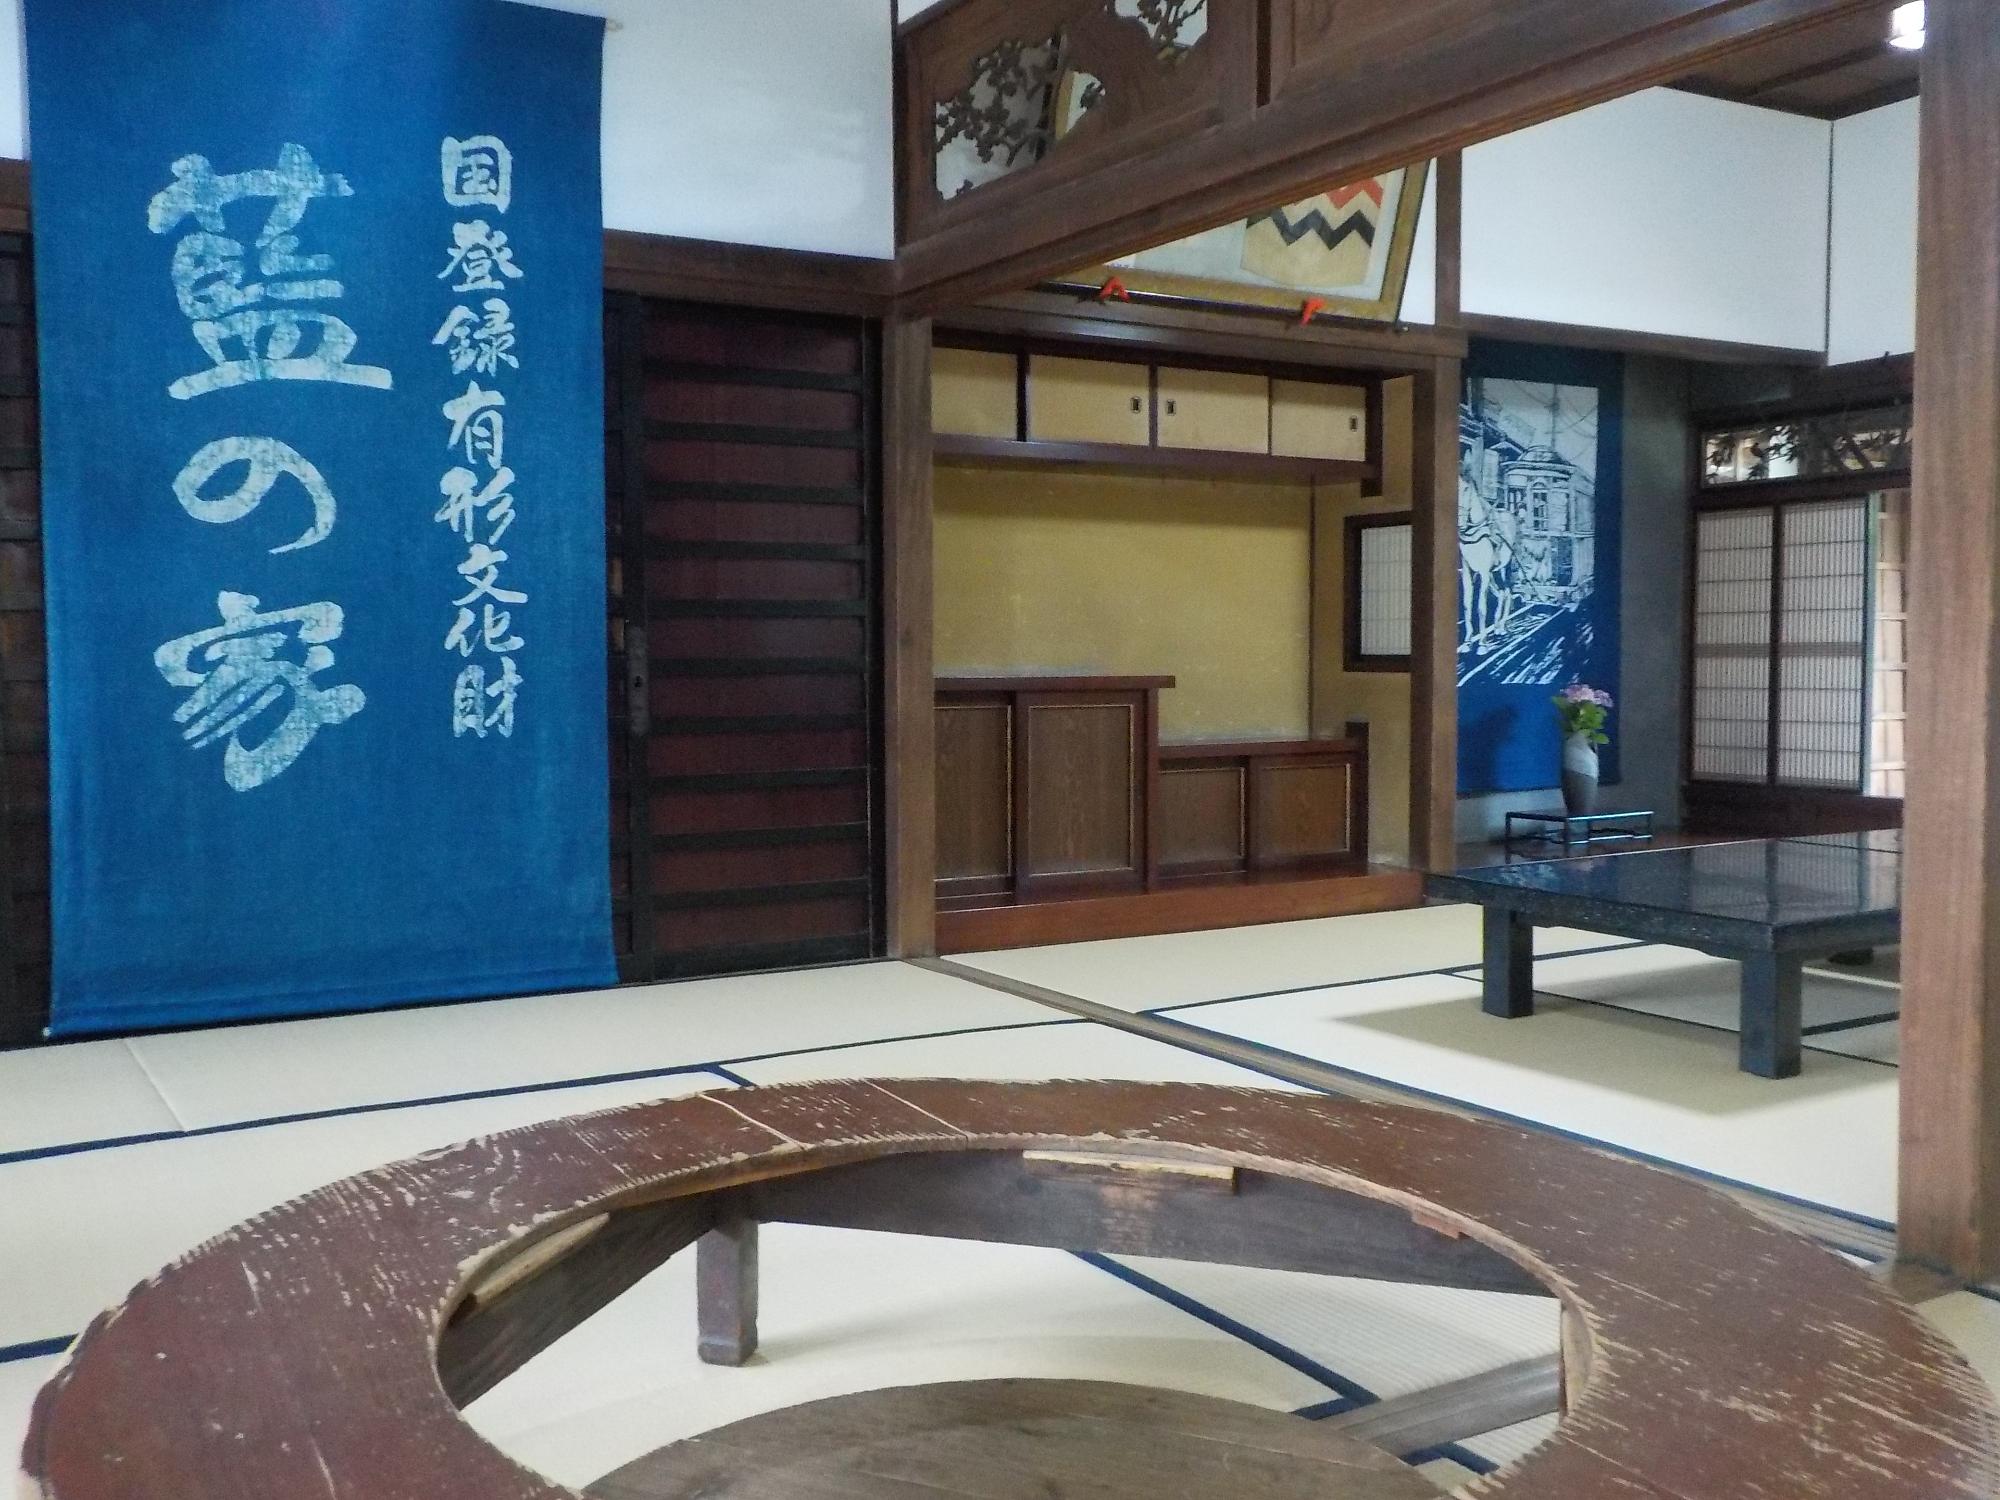 和室に「国登録有形文化財藍の家」と書かれた藍染めの布が飾られている写真